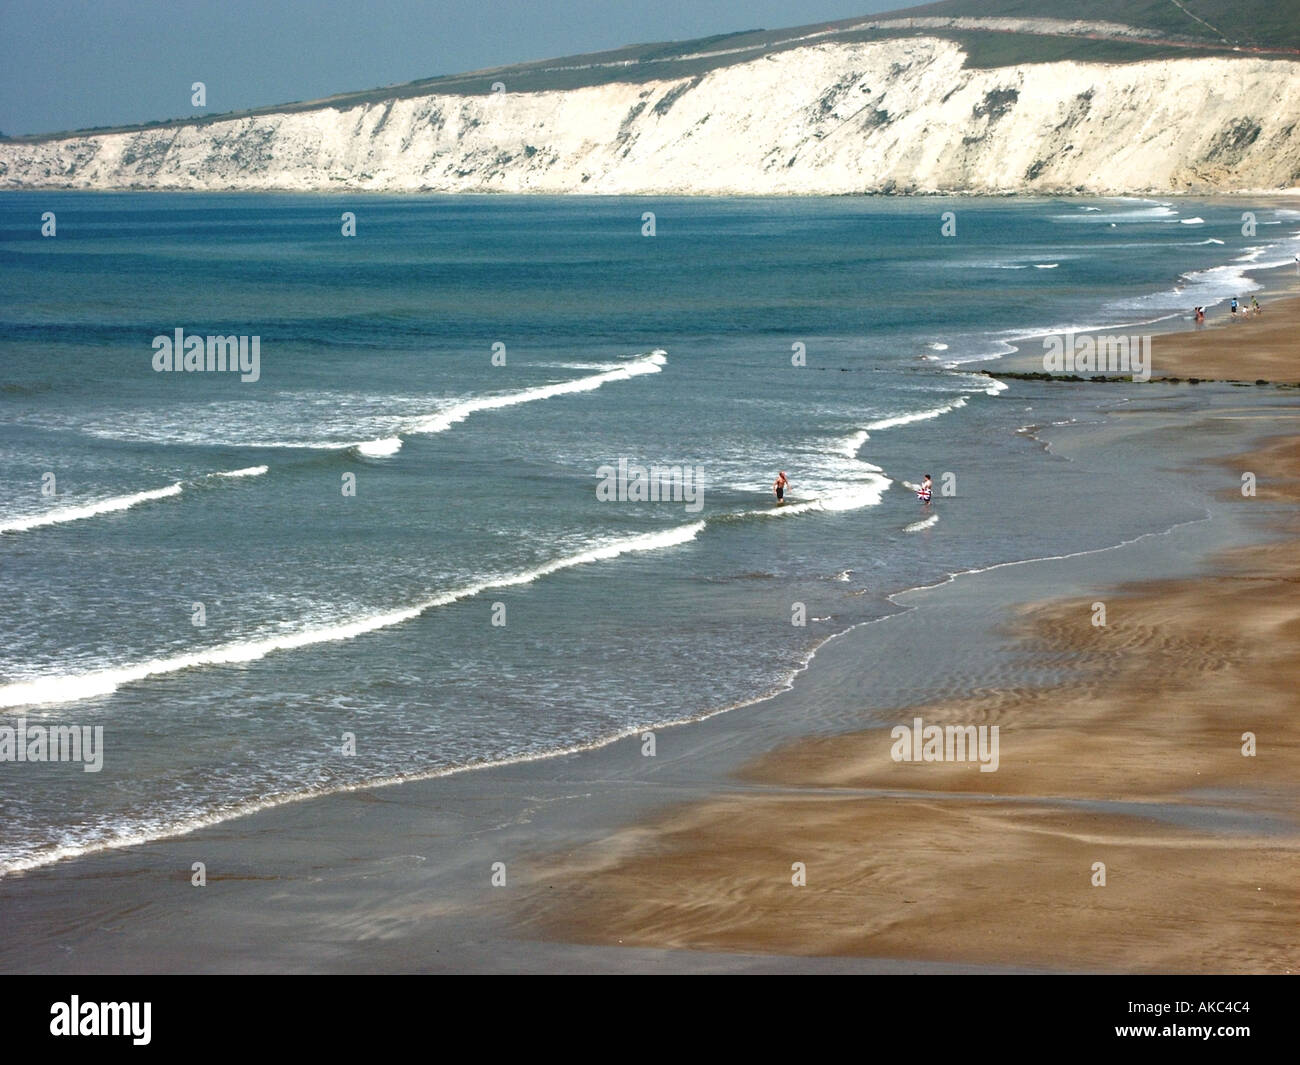 Paysage côtier de falaise craie et paysage marin avec plage de sable à Compton Chine à Compton Bay île de Wight sud de l'Angleterre Royaume-Uni Banque D'Images